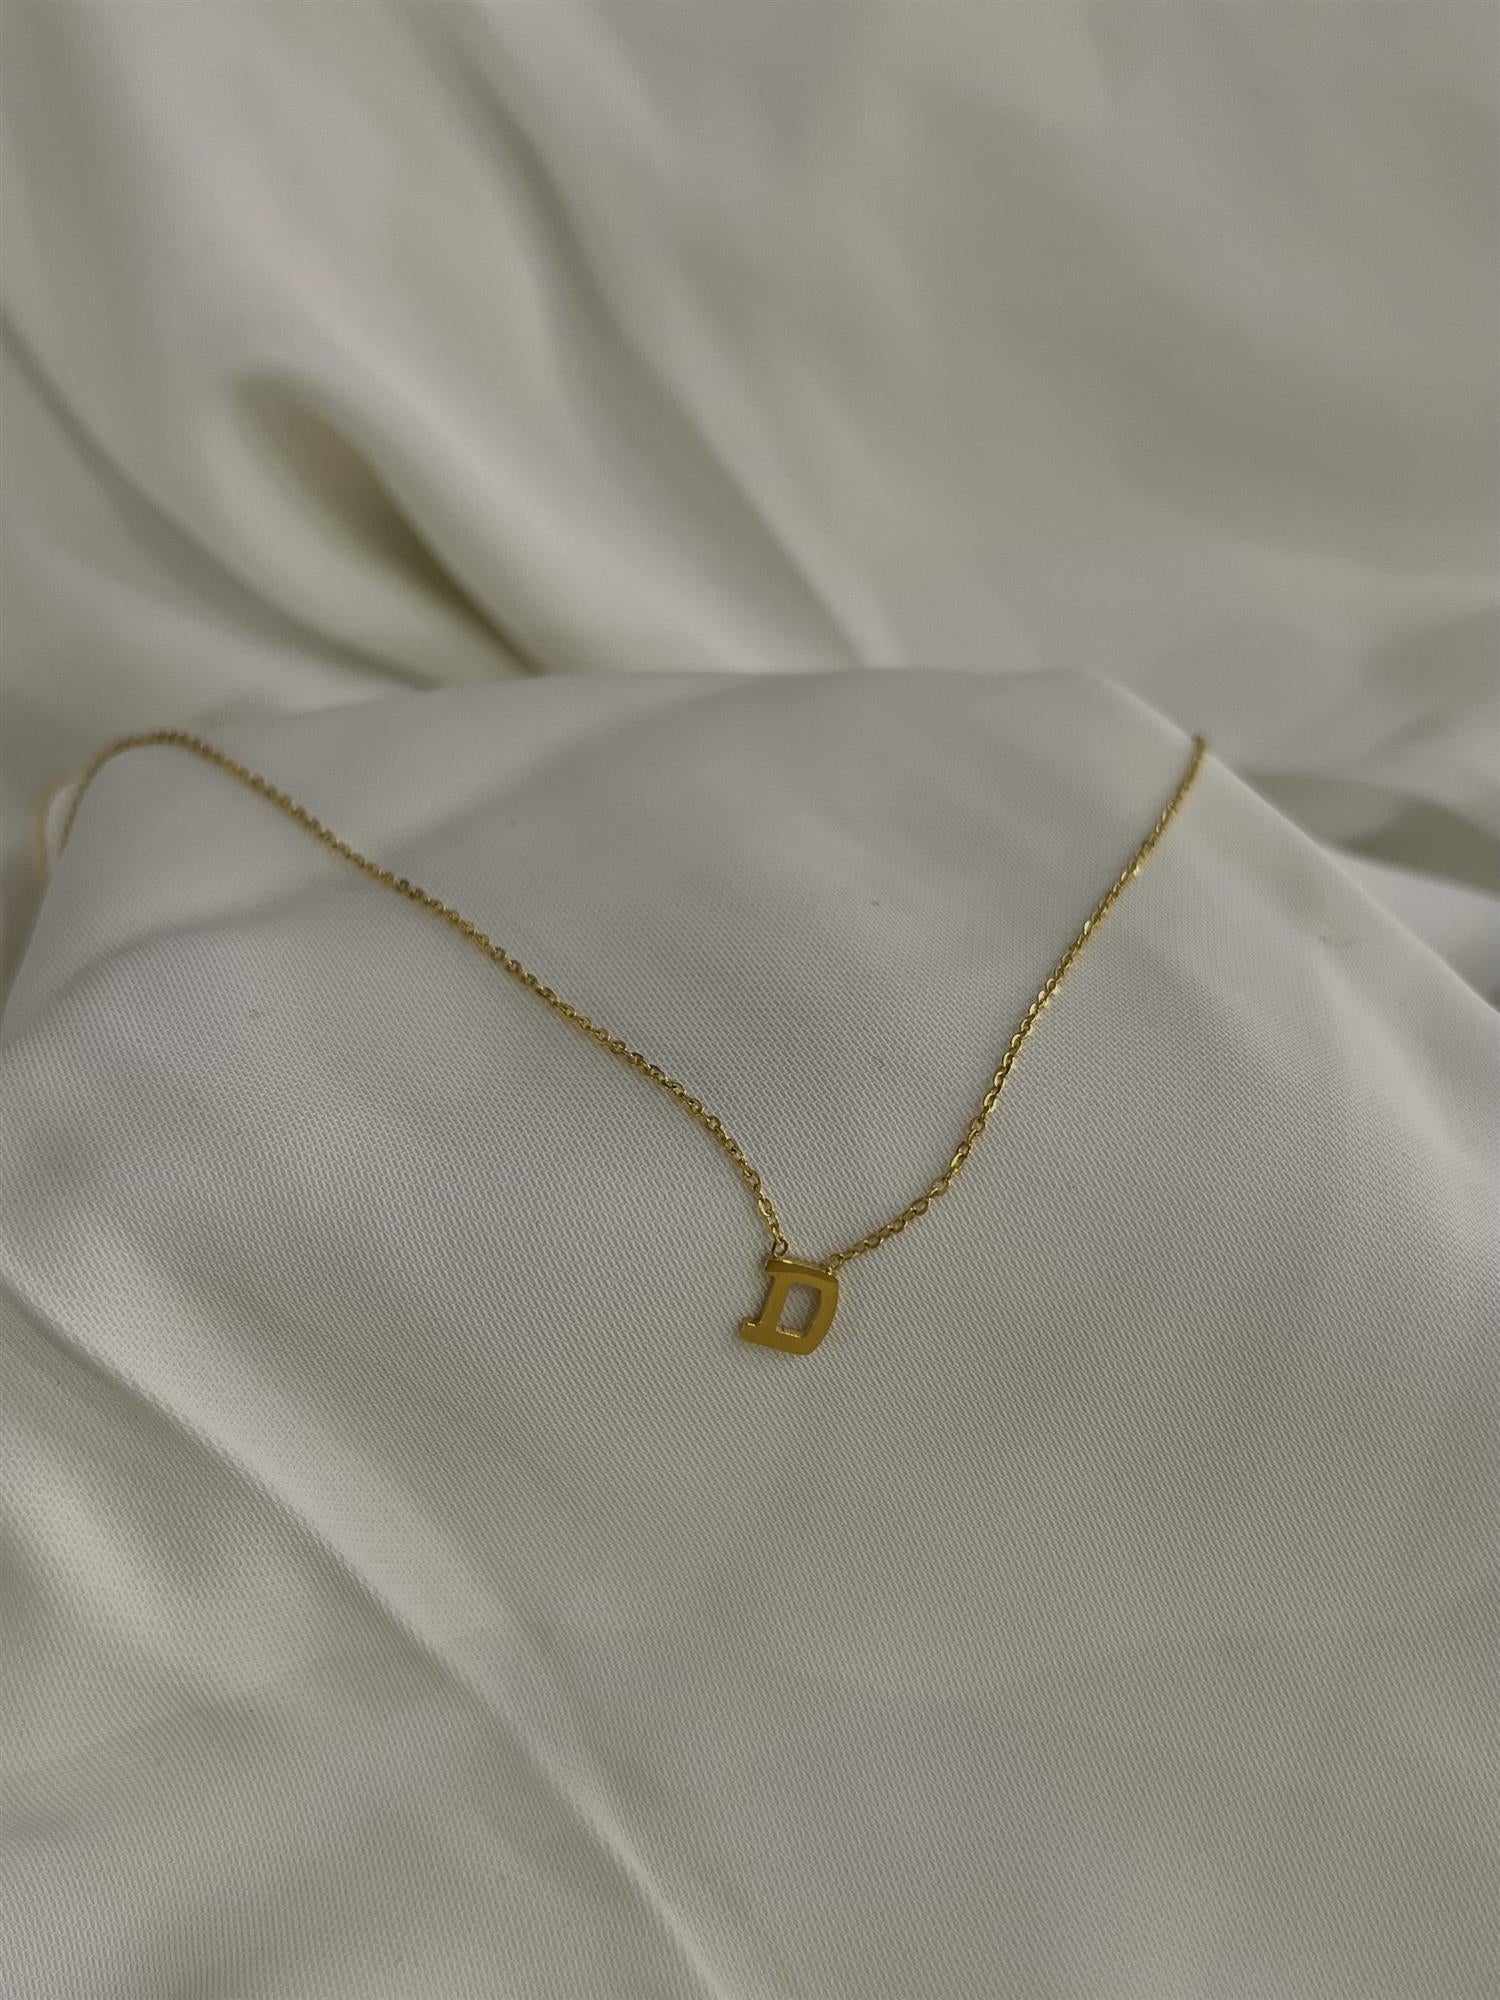 D necklace - Tilbehør